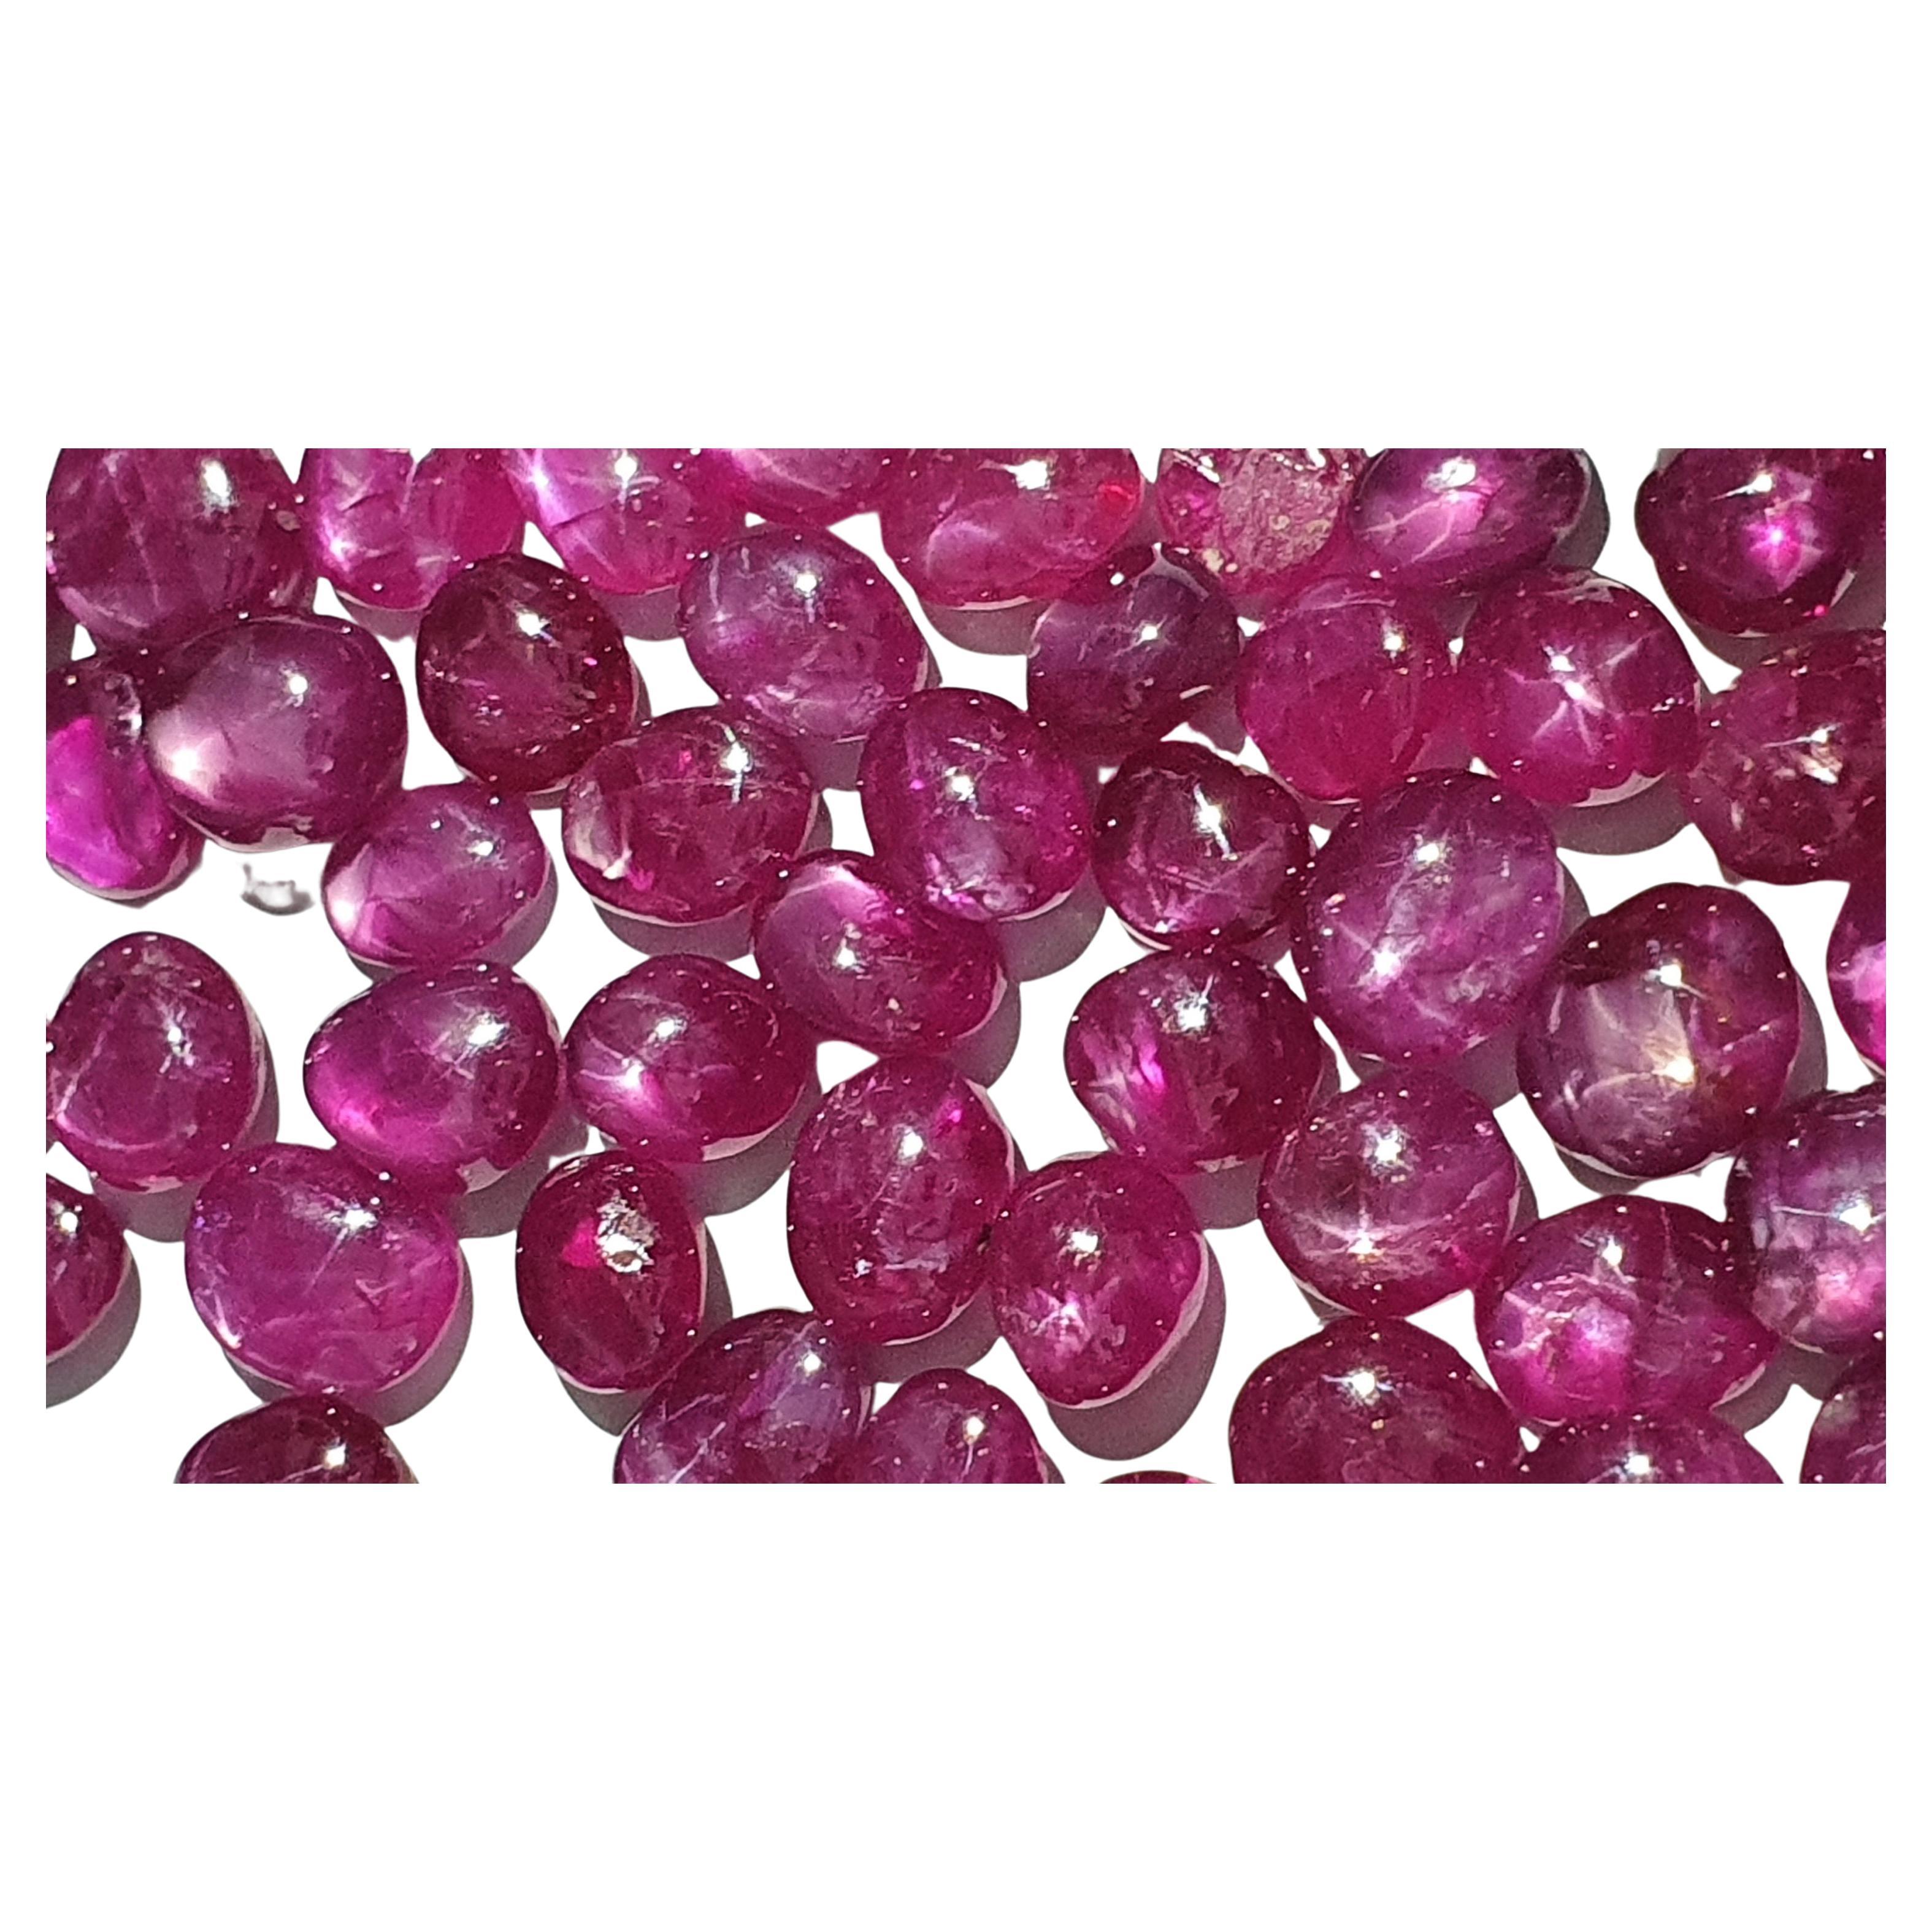 Natural Burma Ruby - Burma Star Ruby -No Heat Burmese Ruby Cabochon Gemstone For Sale